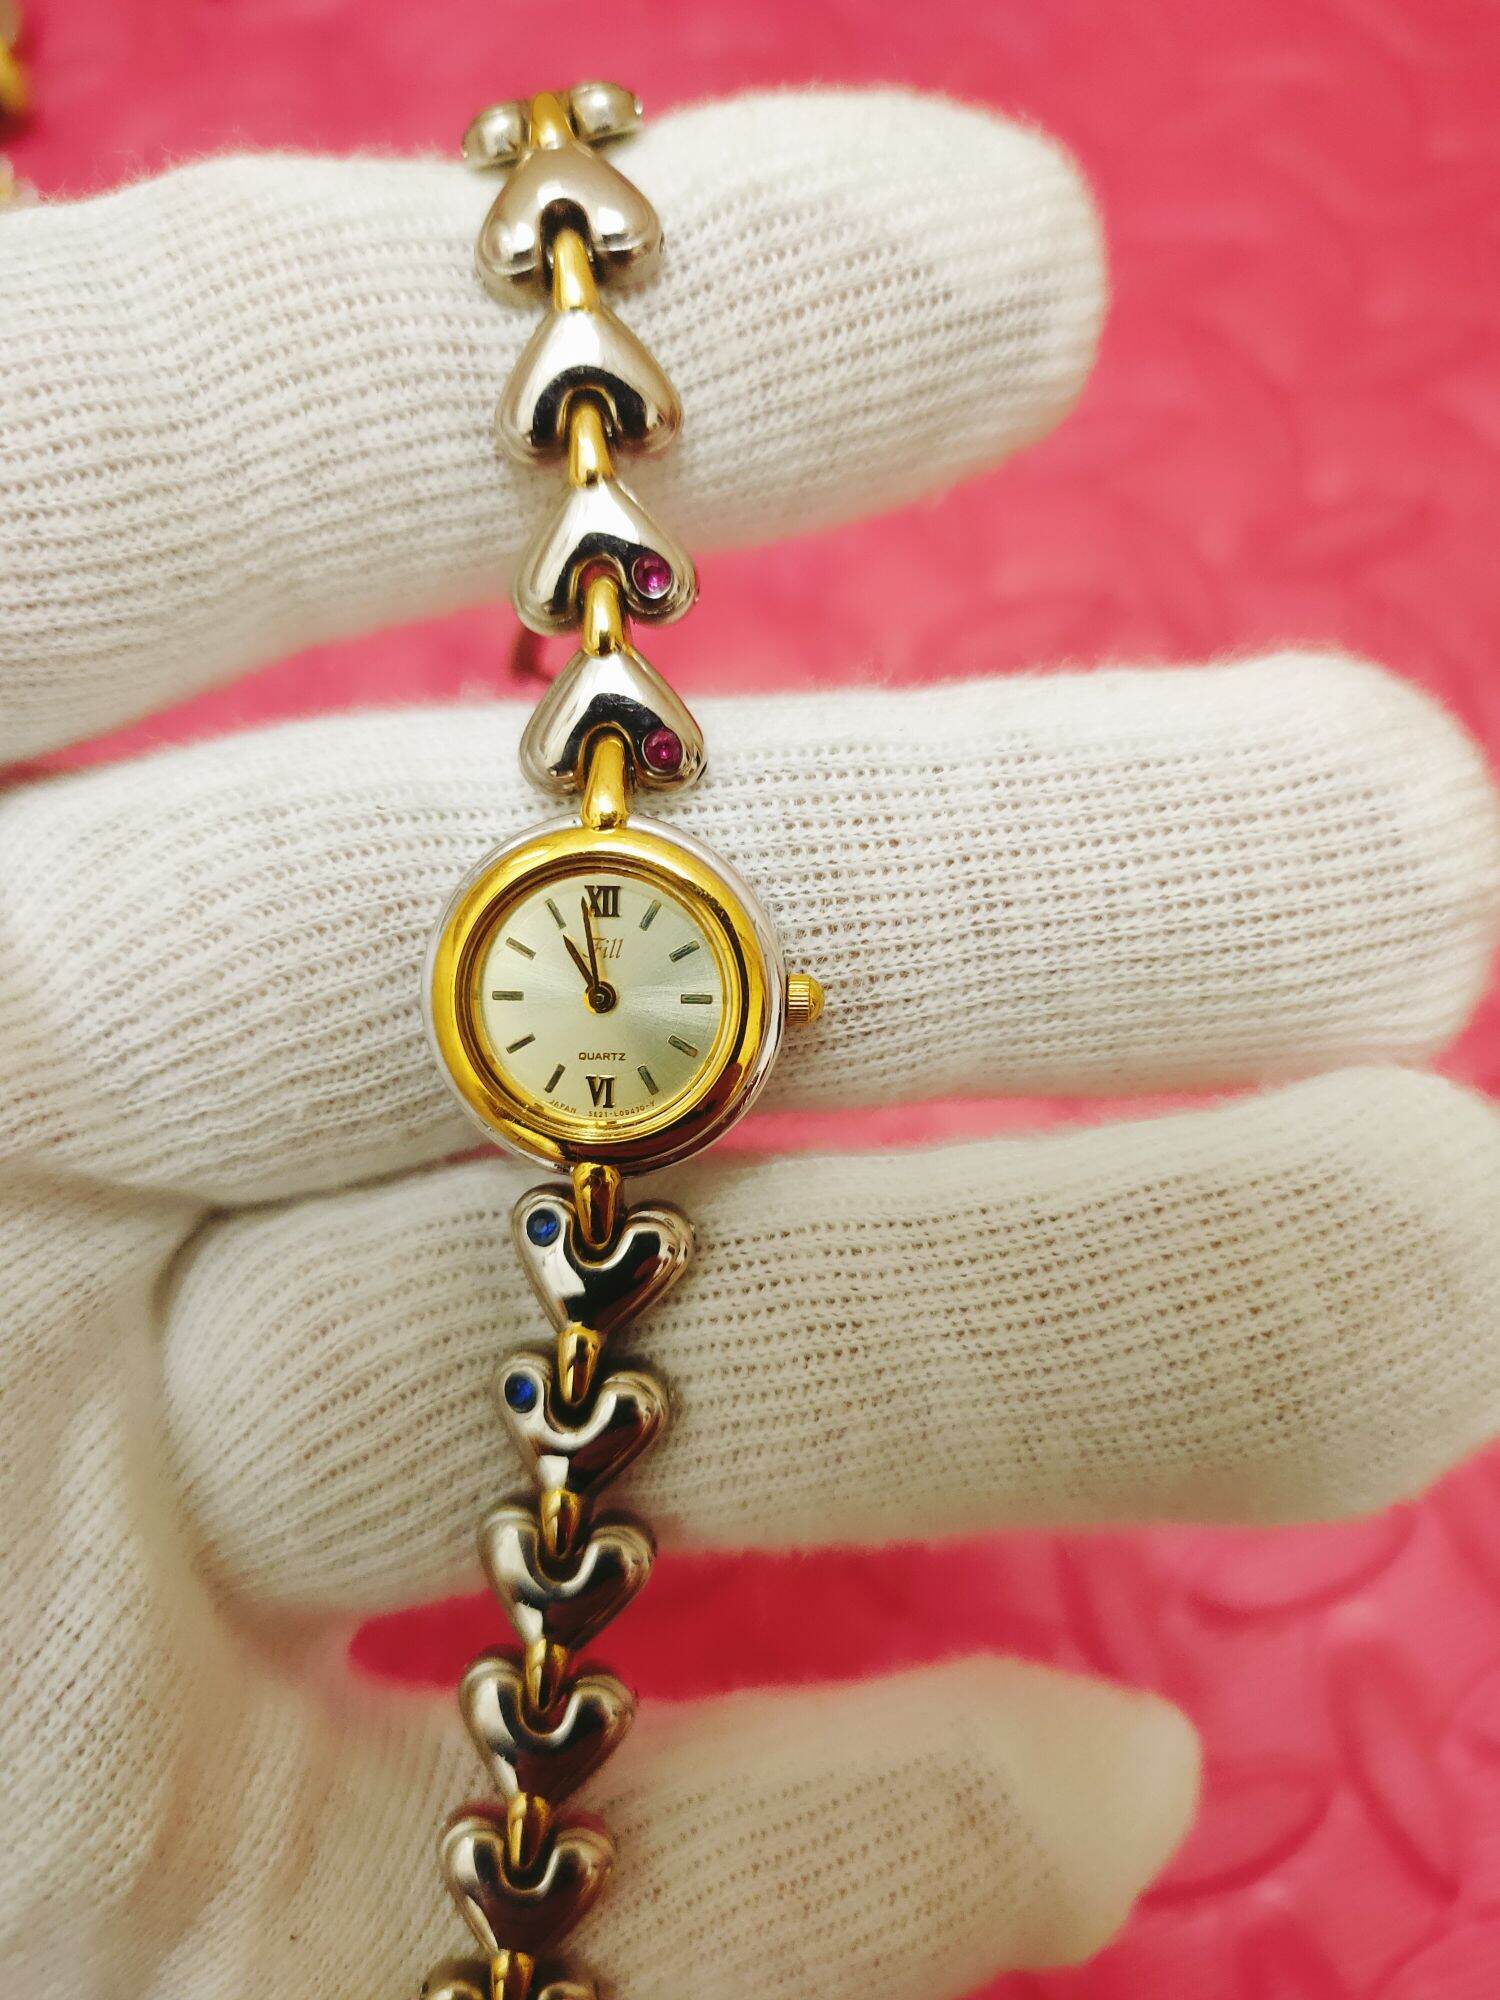 Đồng hồ citizen, dây cực xinh xắn, size 18mm, hình thức đẹp 99% thumbnail